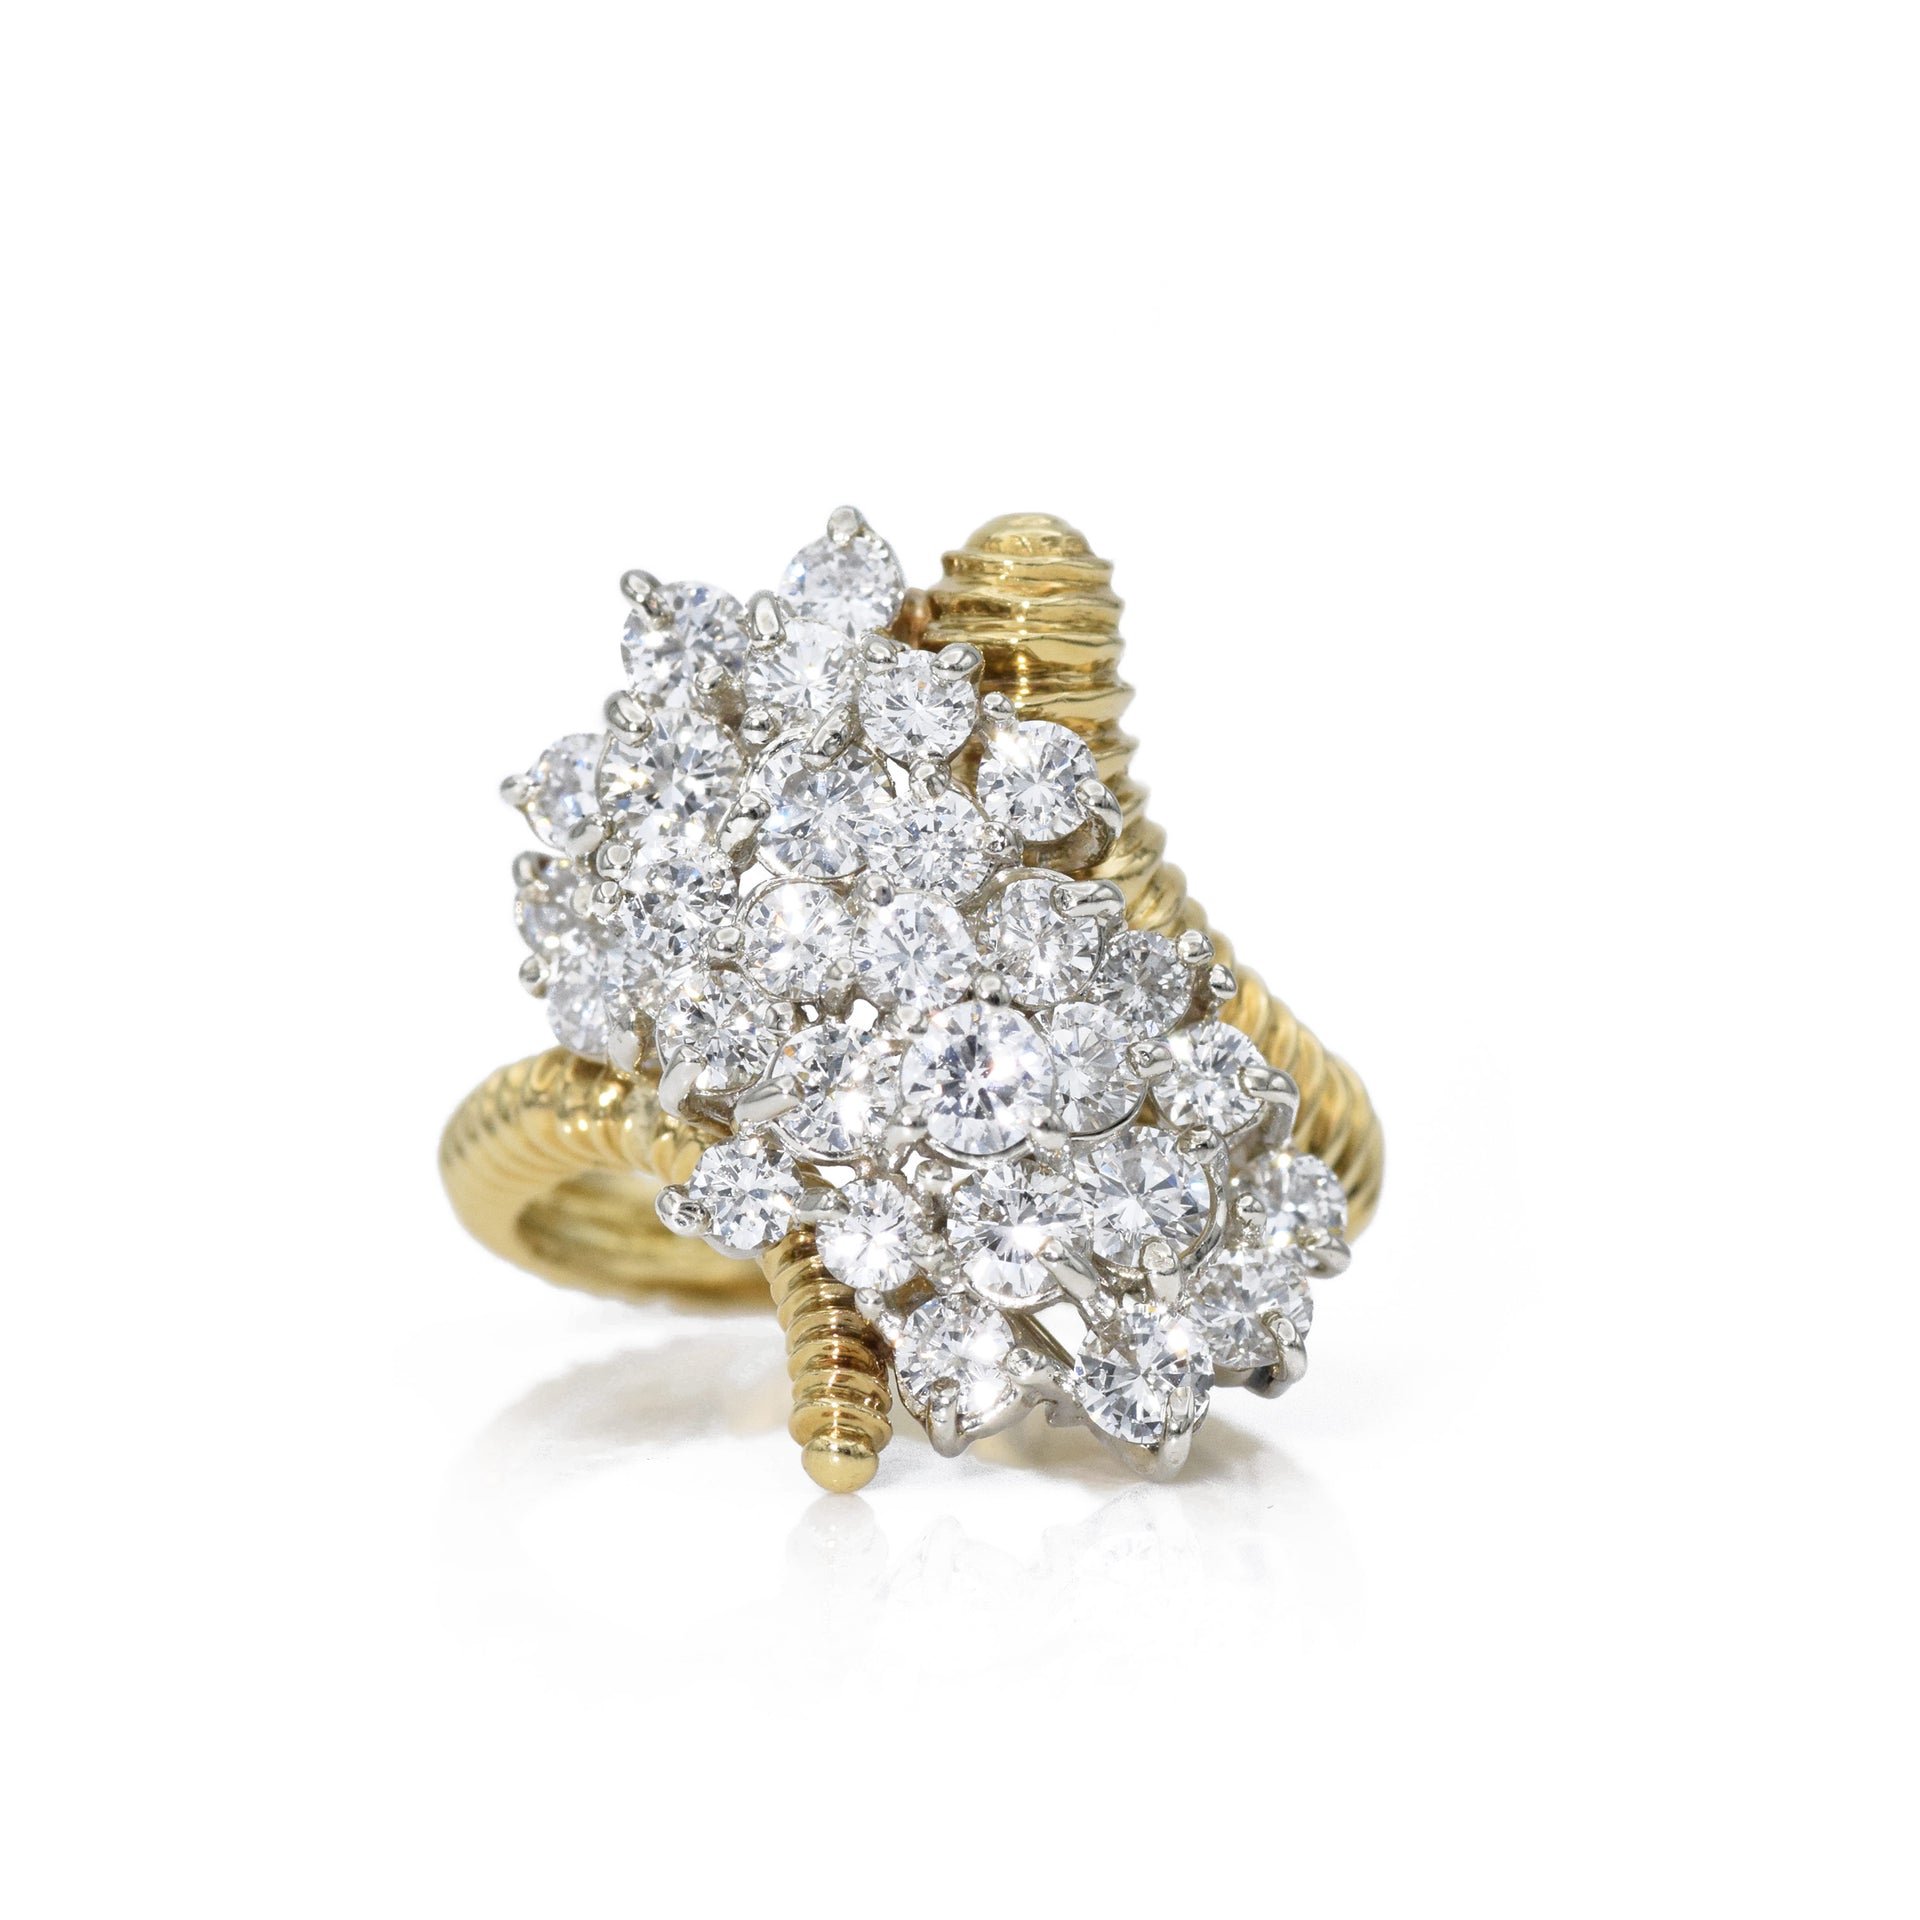 Vintage c. 1970s 18kt Gold Diamond Cluster Ring